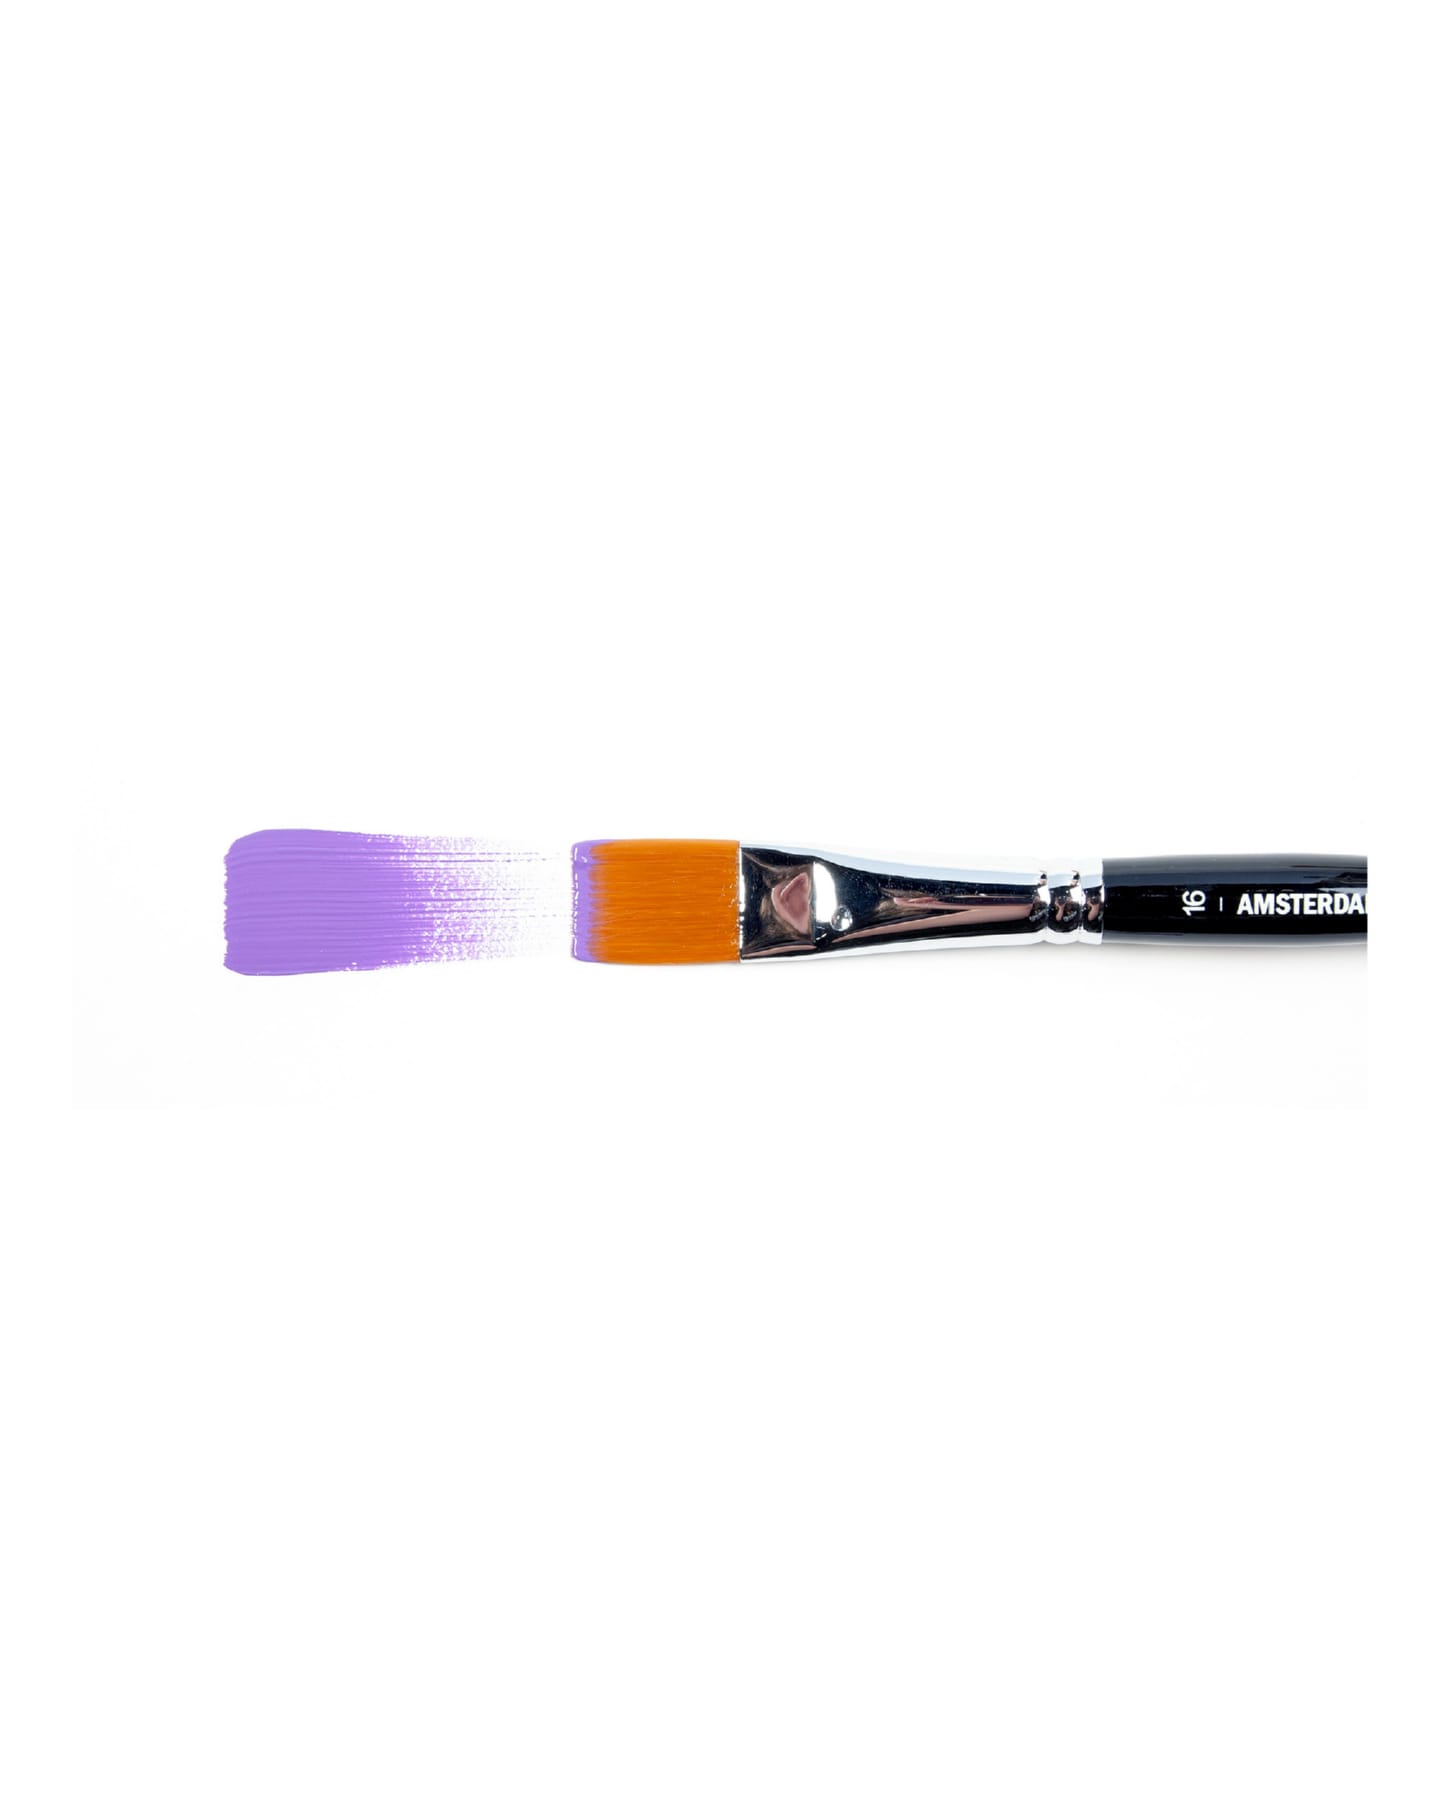 Кисть для акрила Amsterdam 342 синтетика мягкая плоская ручка короткая 2 шт/упак 14 размеров в ассортименте